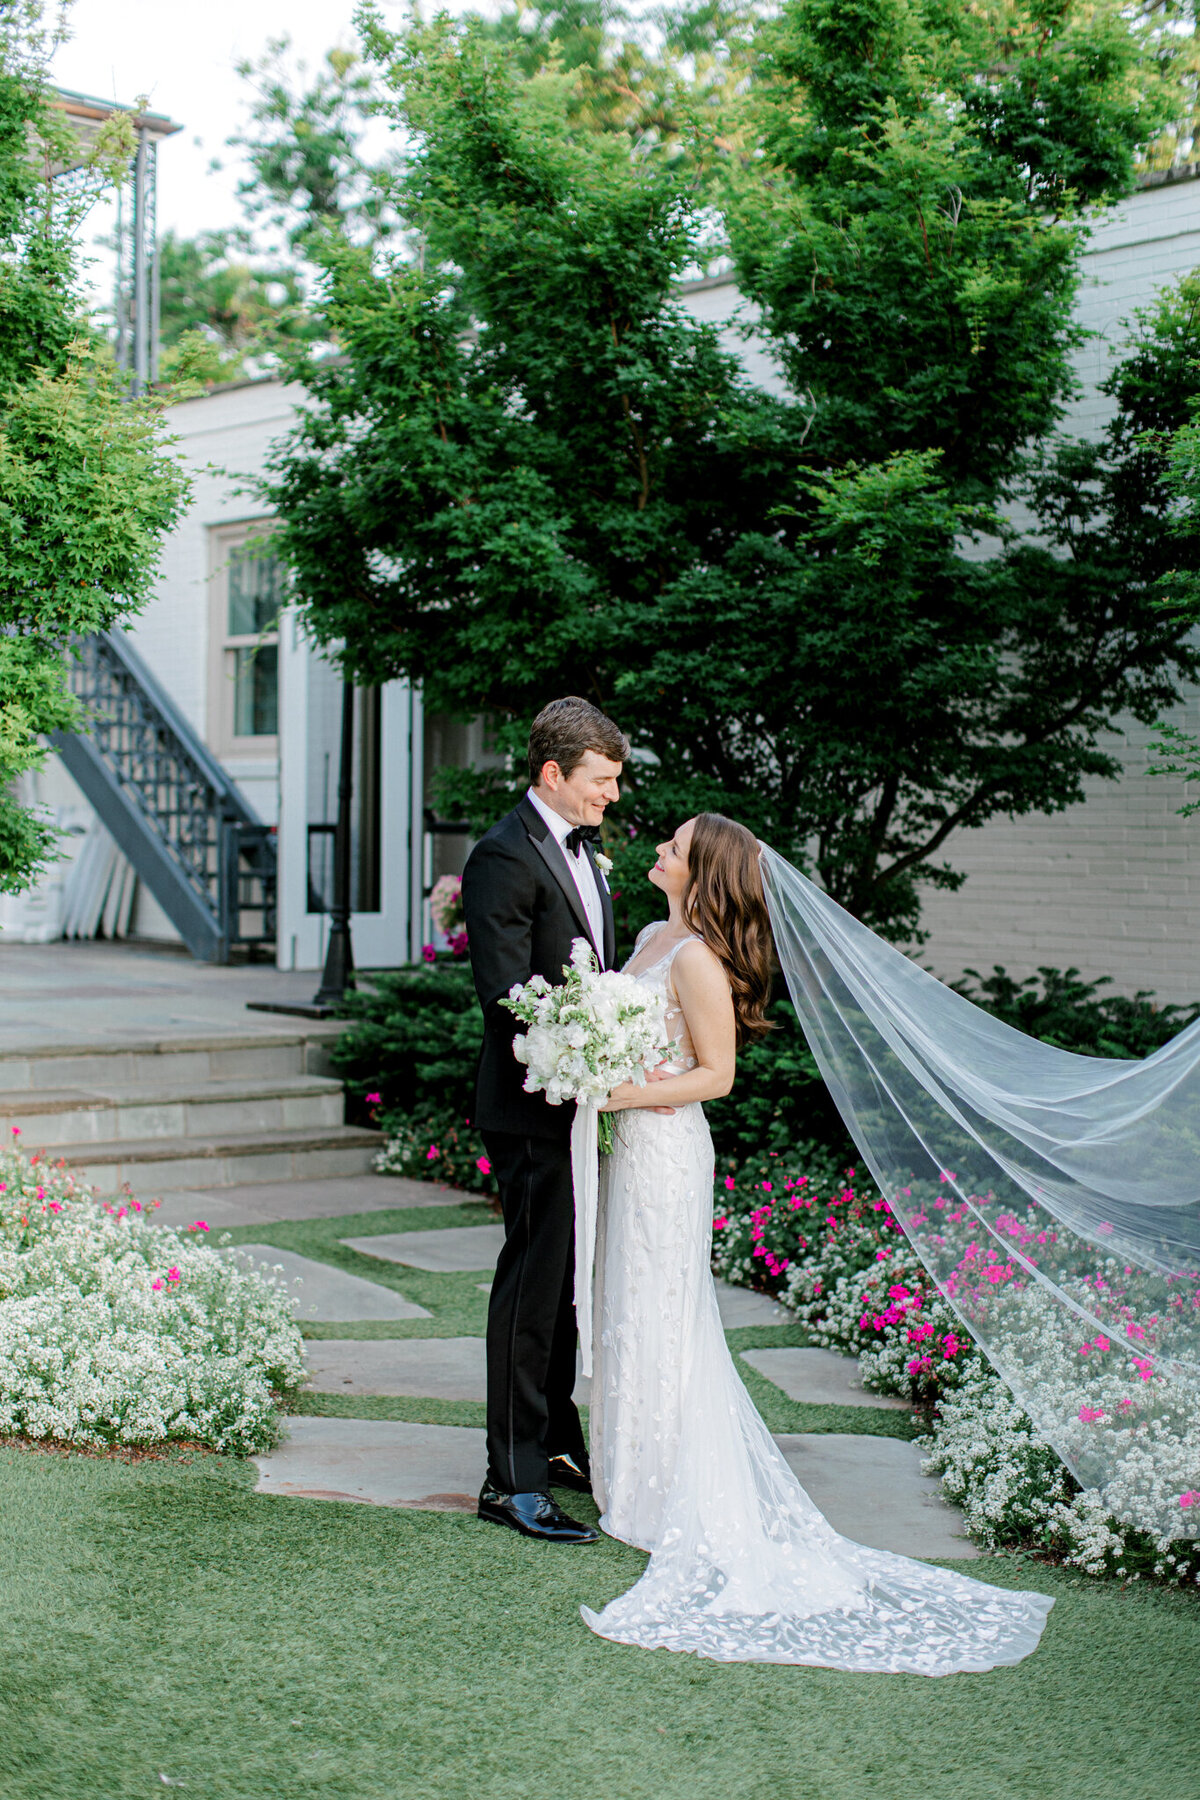 Gena & Matt's Wedding at the Dallas Arboretum | Dallas Wedding Photographer | Sami Kathryn Photography-175